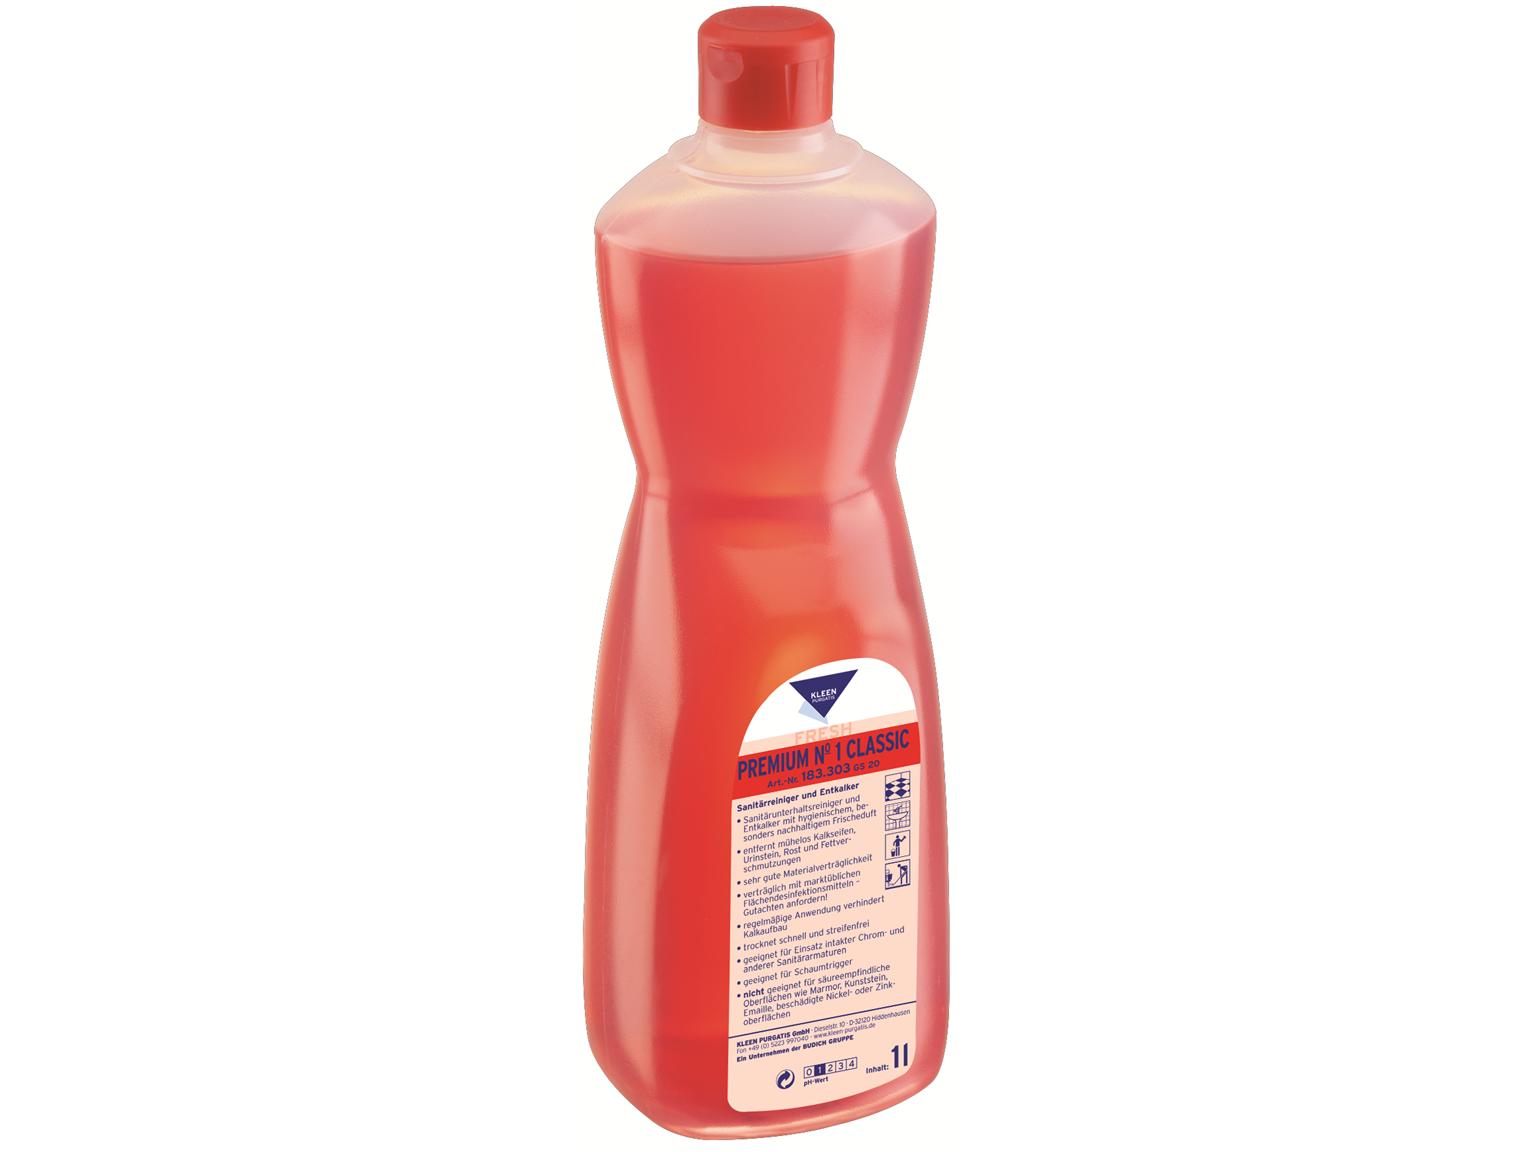 REINIGUNGSMITTEL KLEEN PURGATIS  Premium No. 1, 1 Liter Flasche